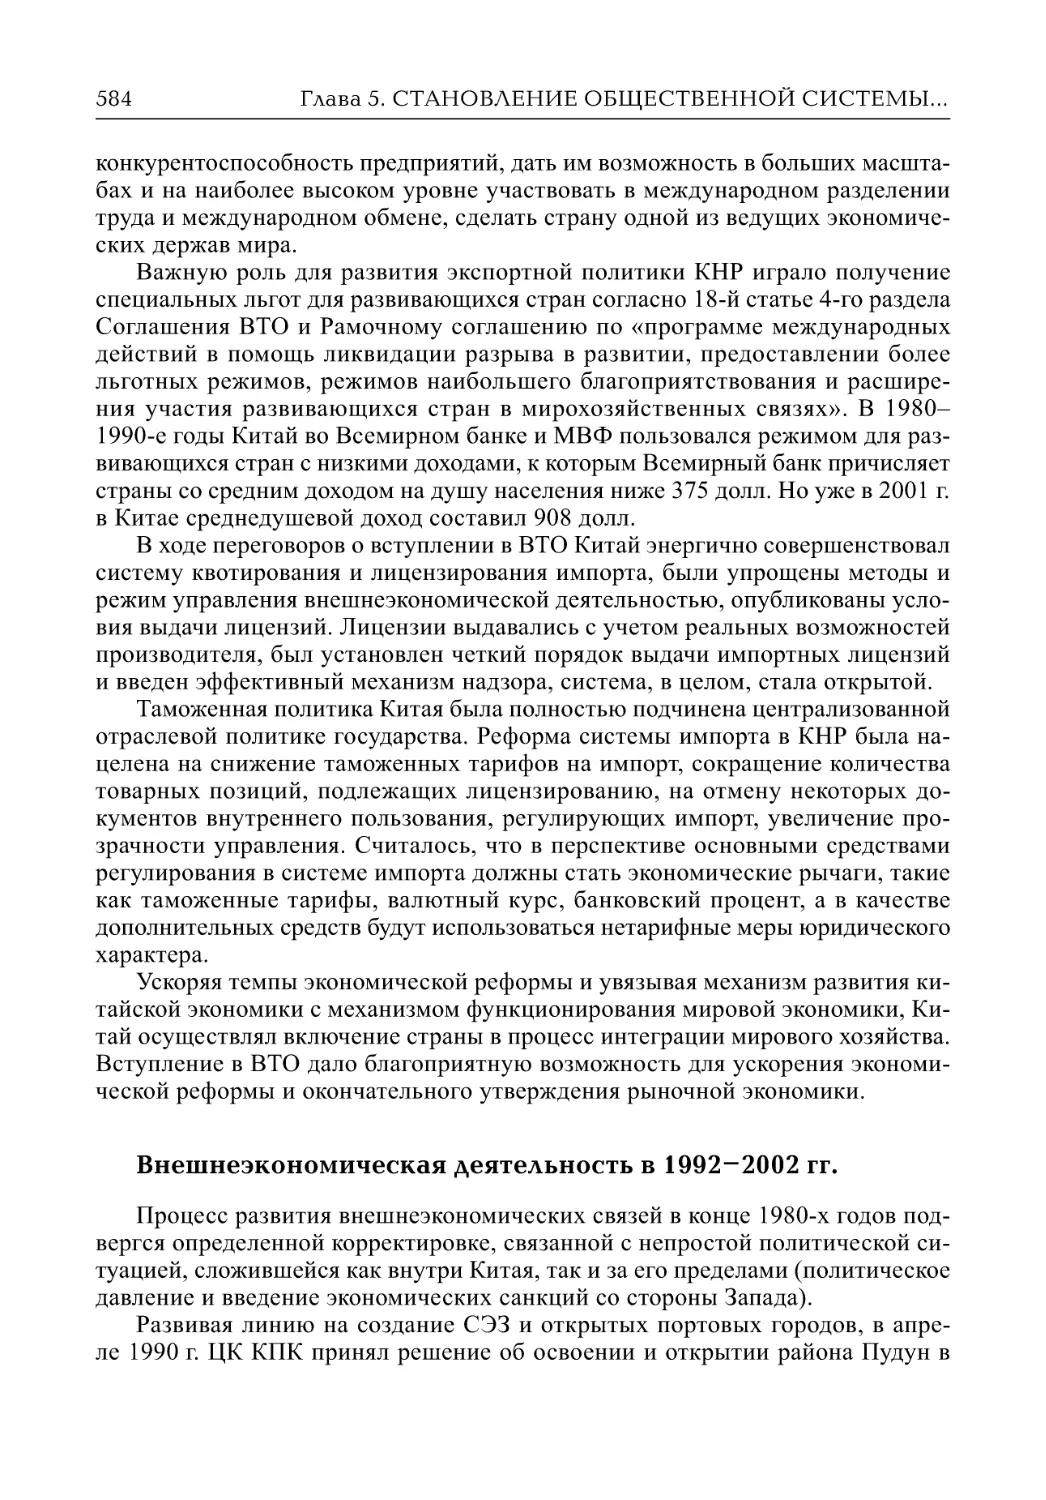 Внешнеэкономическая деятельность в 1992–2002 гг. (М.В. Александрова)